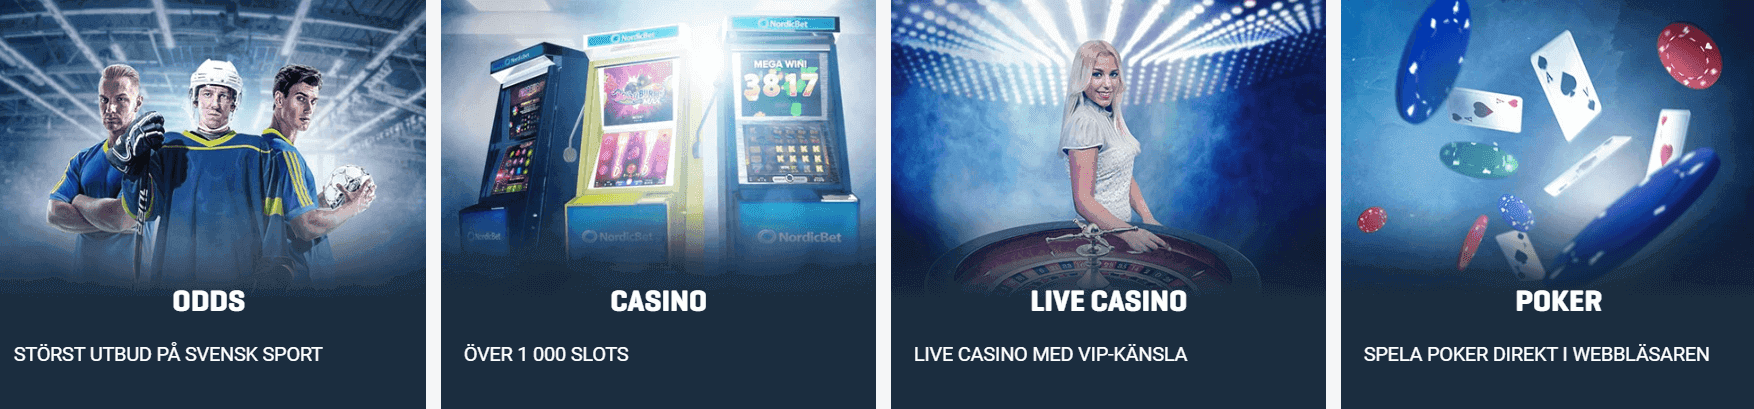 Nordicbet Casino Odds Live Casino Poker produkter